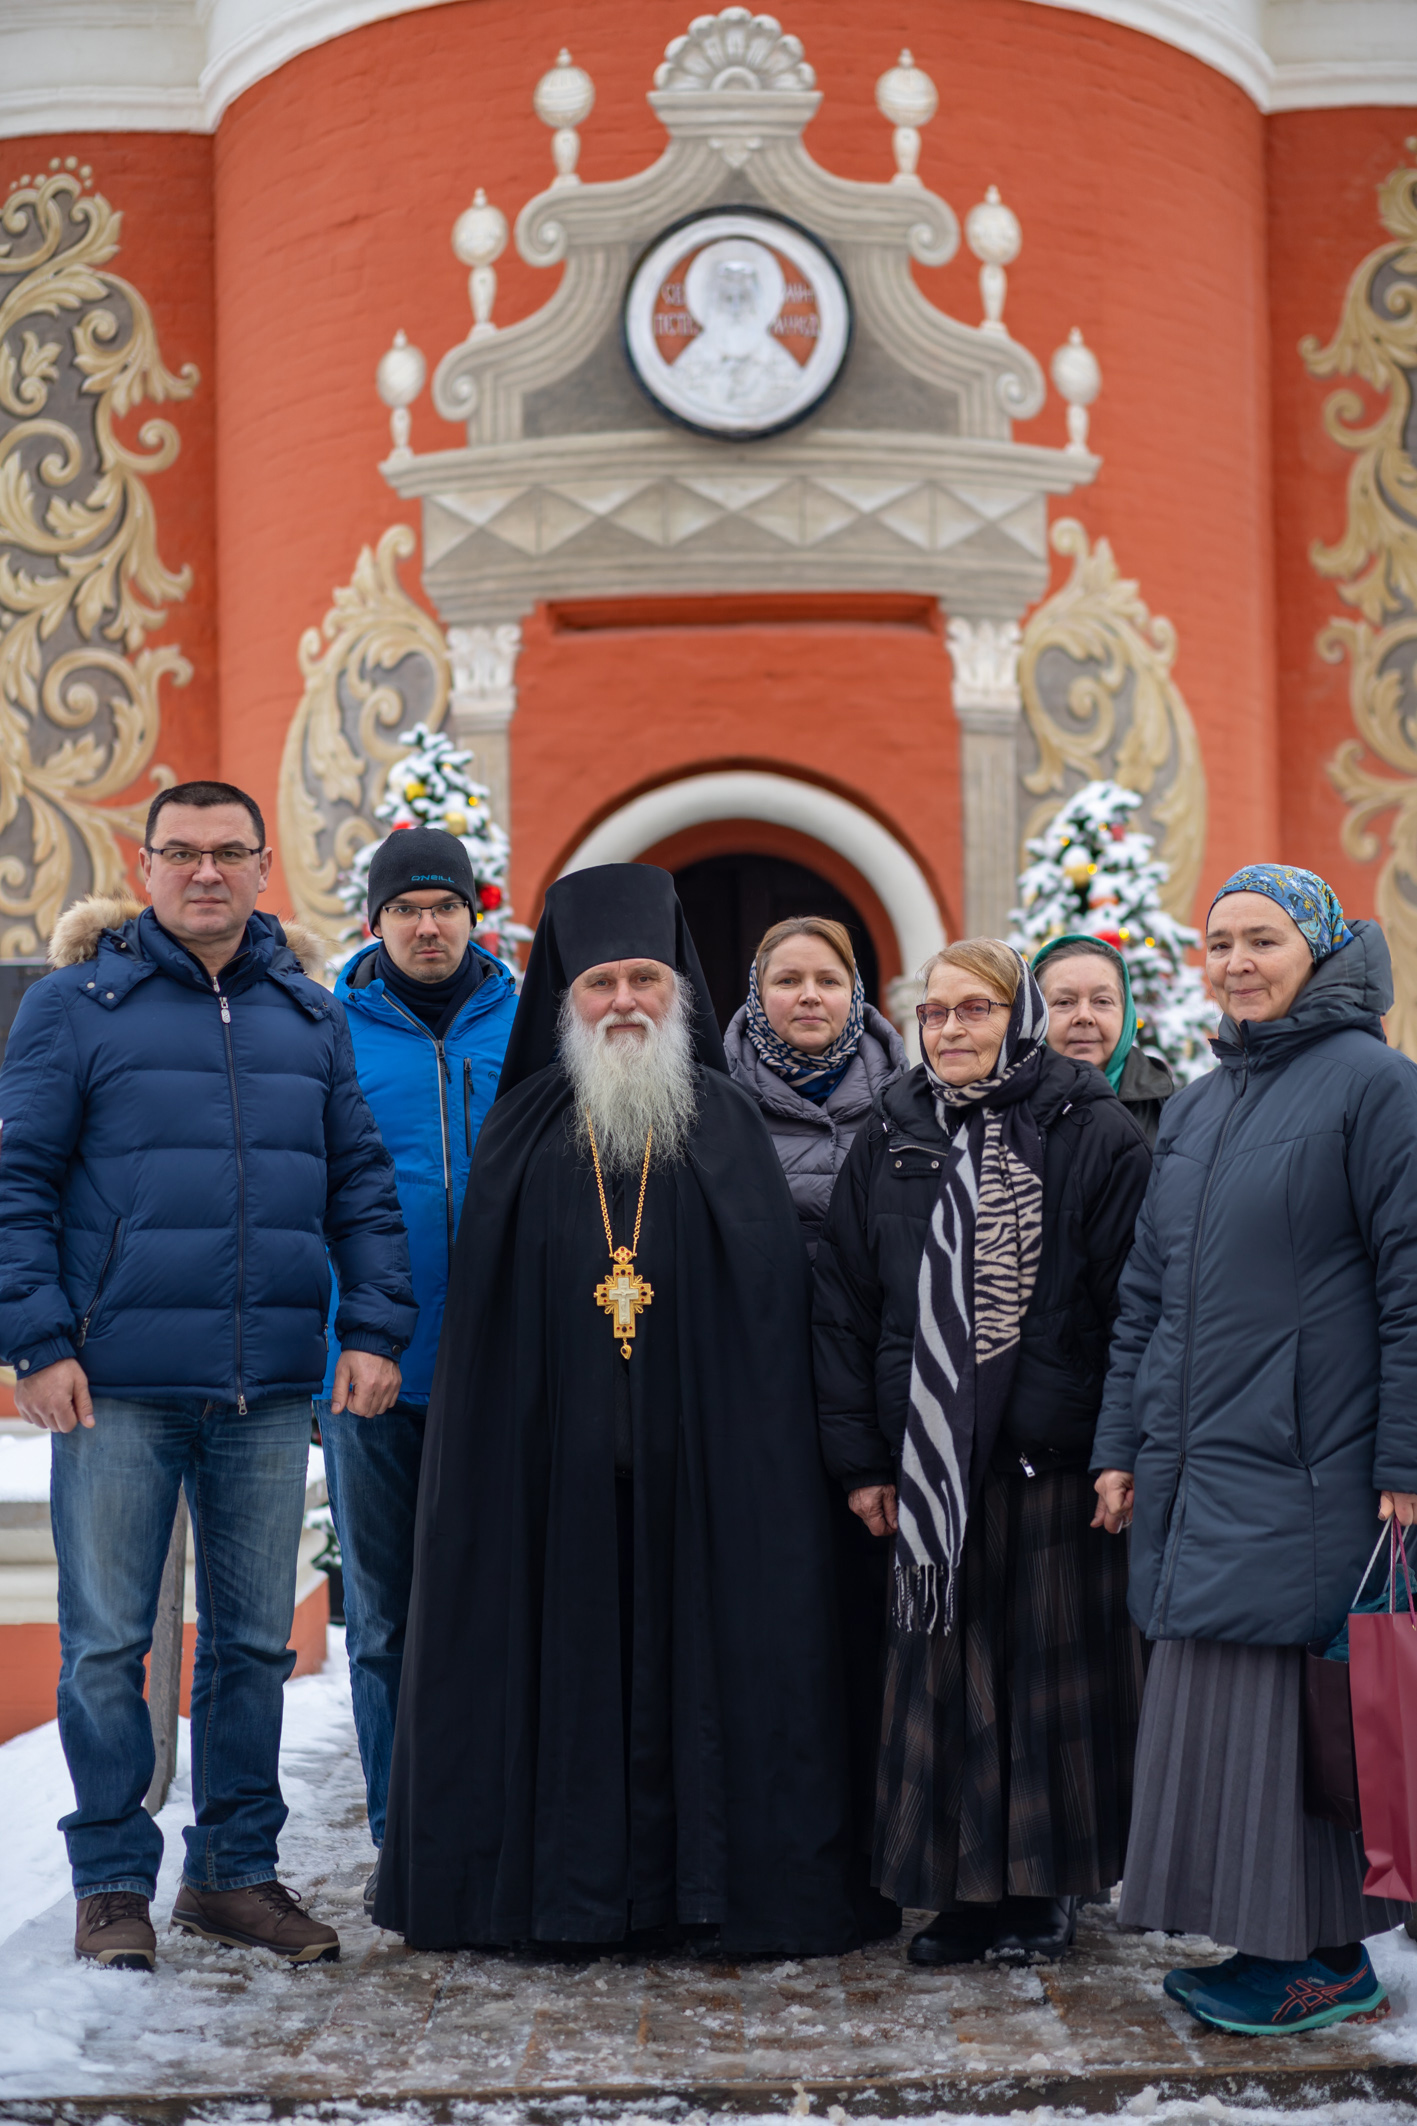 Отец Петр возле соборного храма Высоко-Петровской обители во имя святителя Петра с сотрудниками и прихожанами